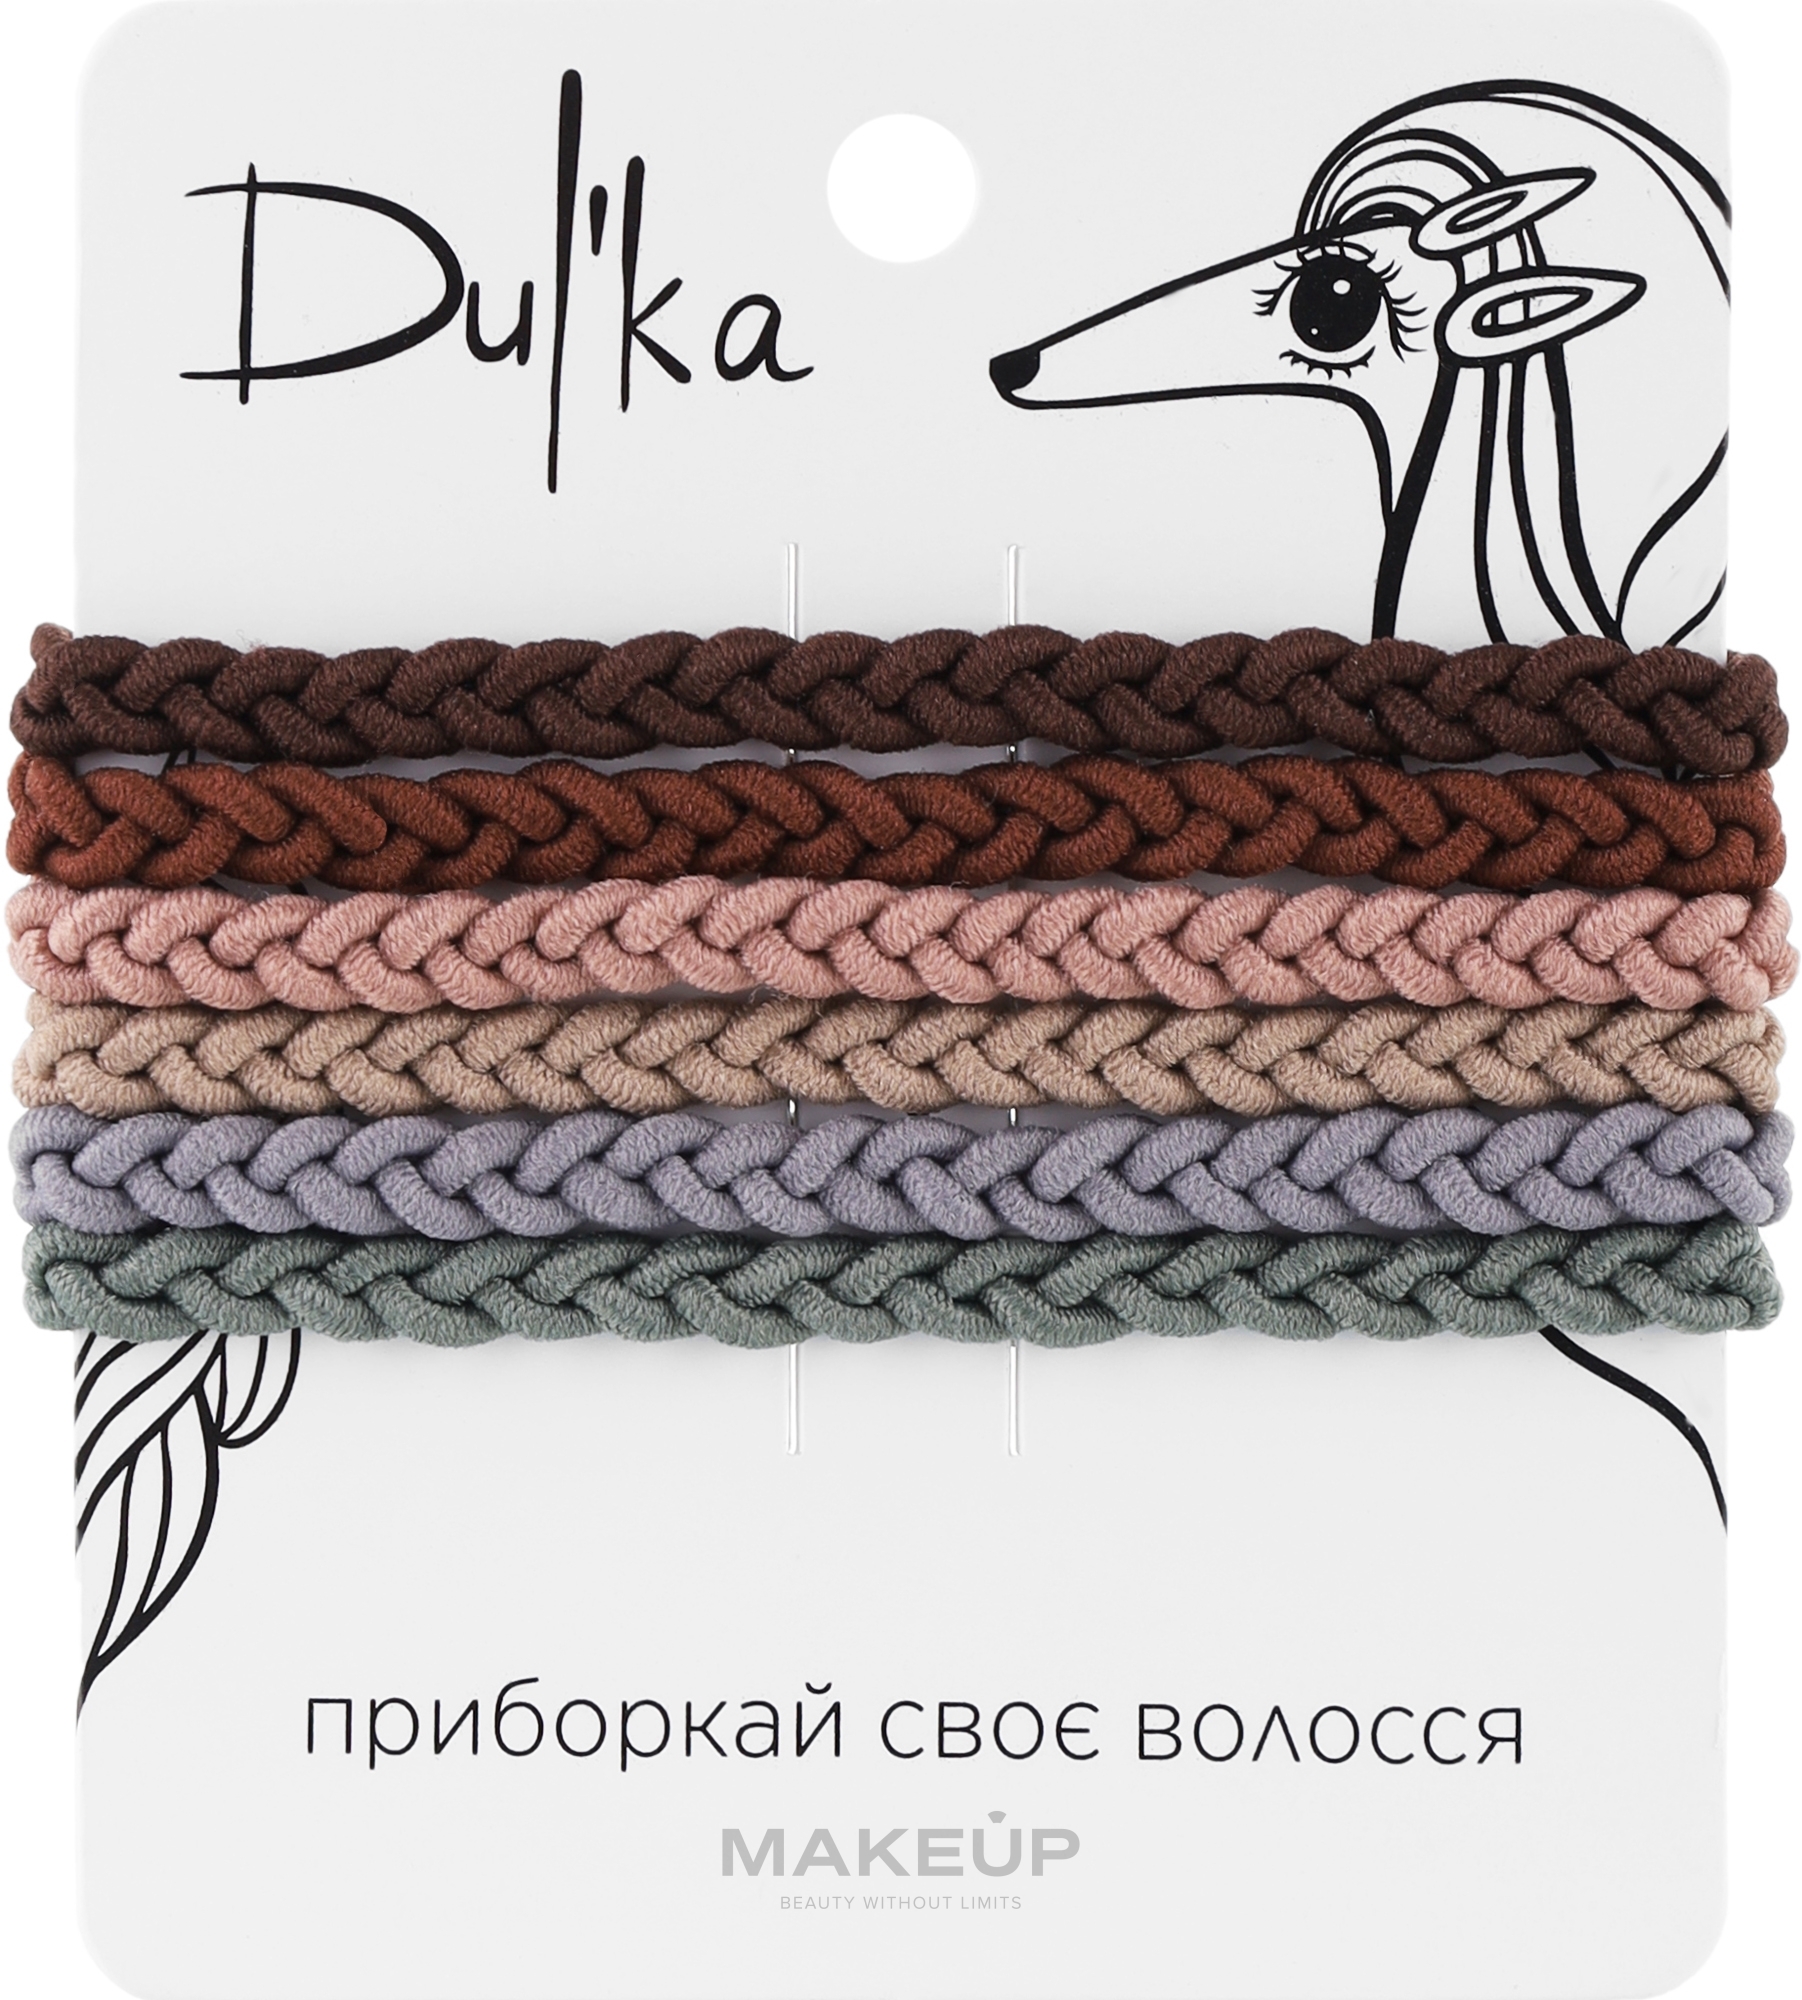 Набор разноцветных резинок для волос UH717724, 6 шт - Dulka  — фото 6шт